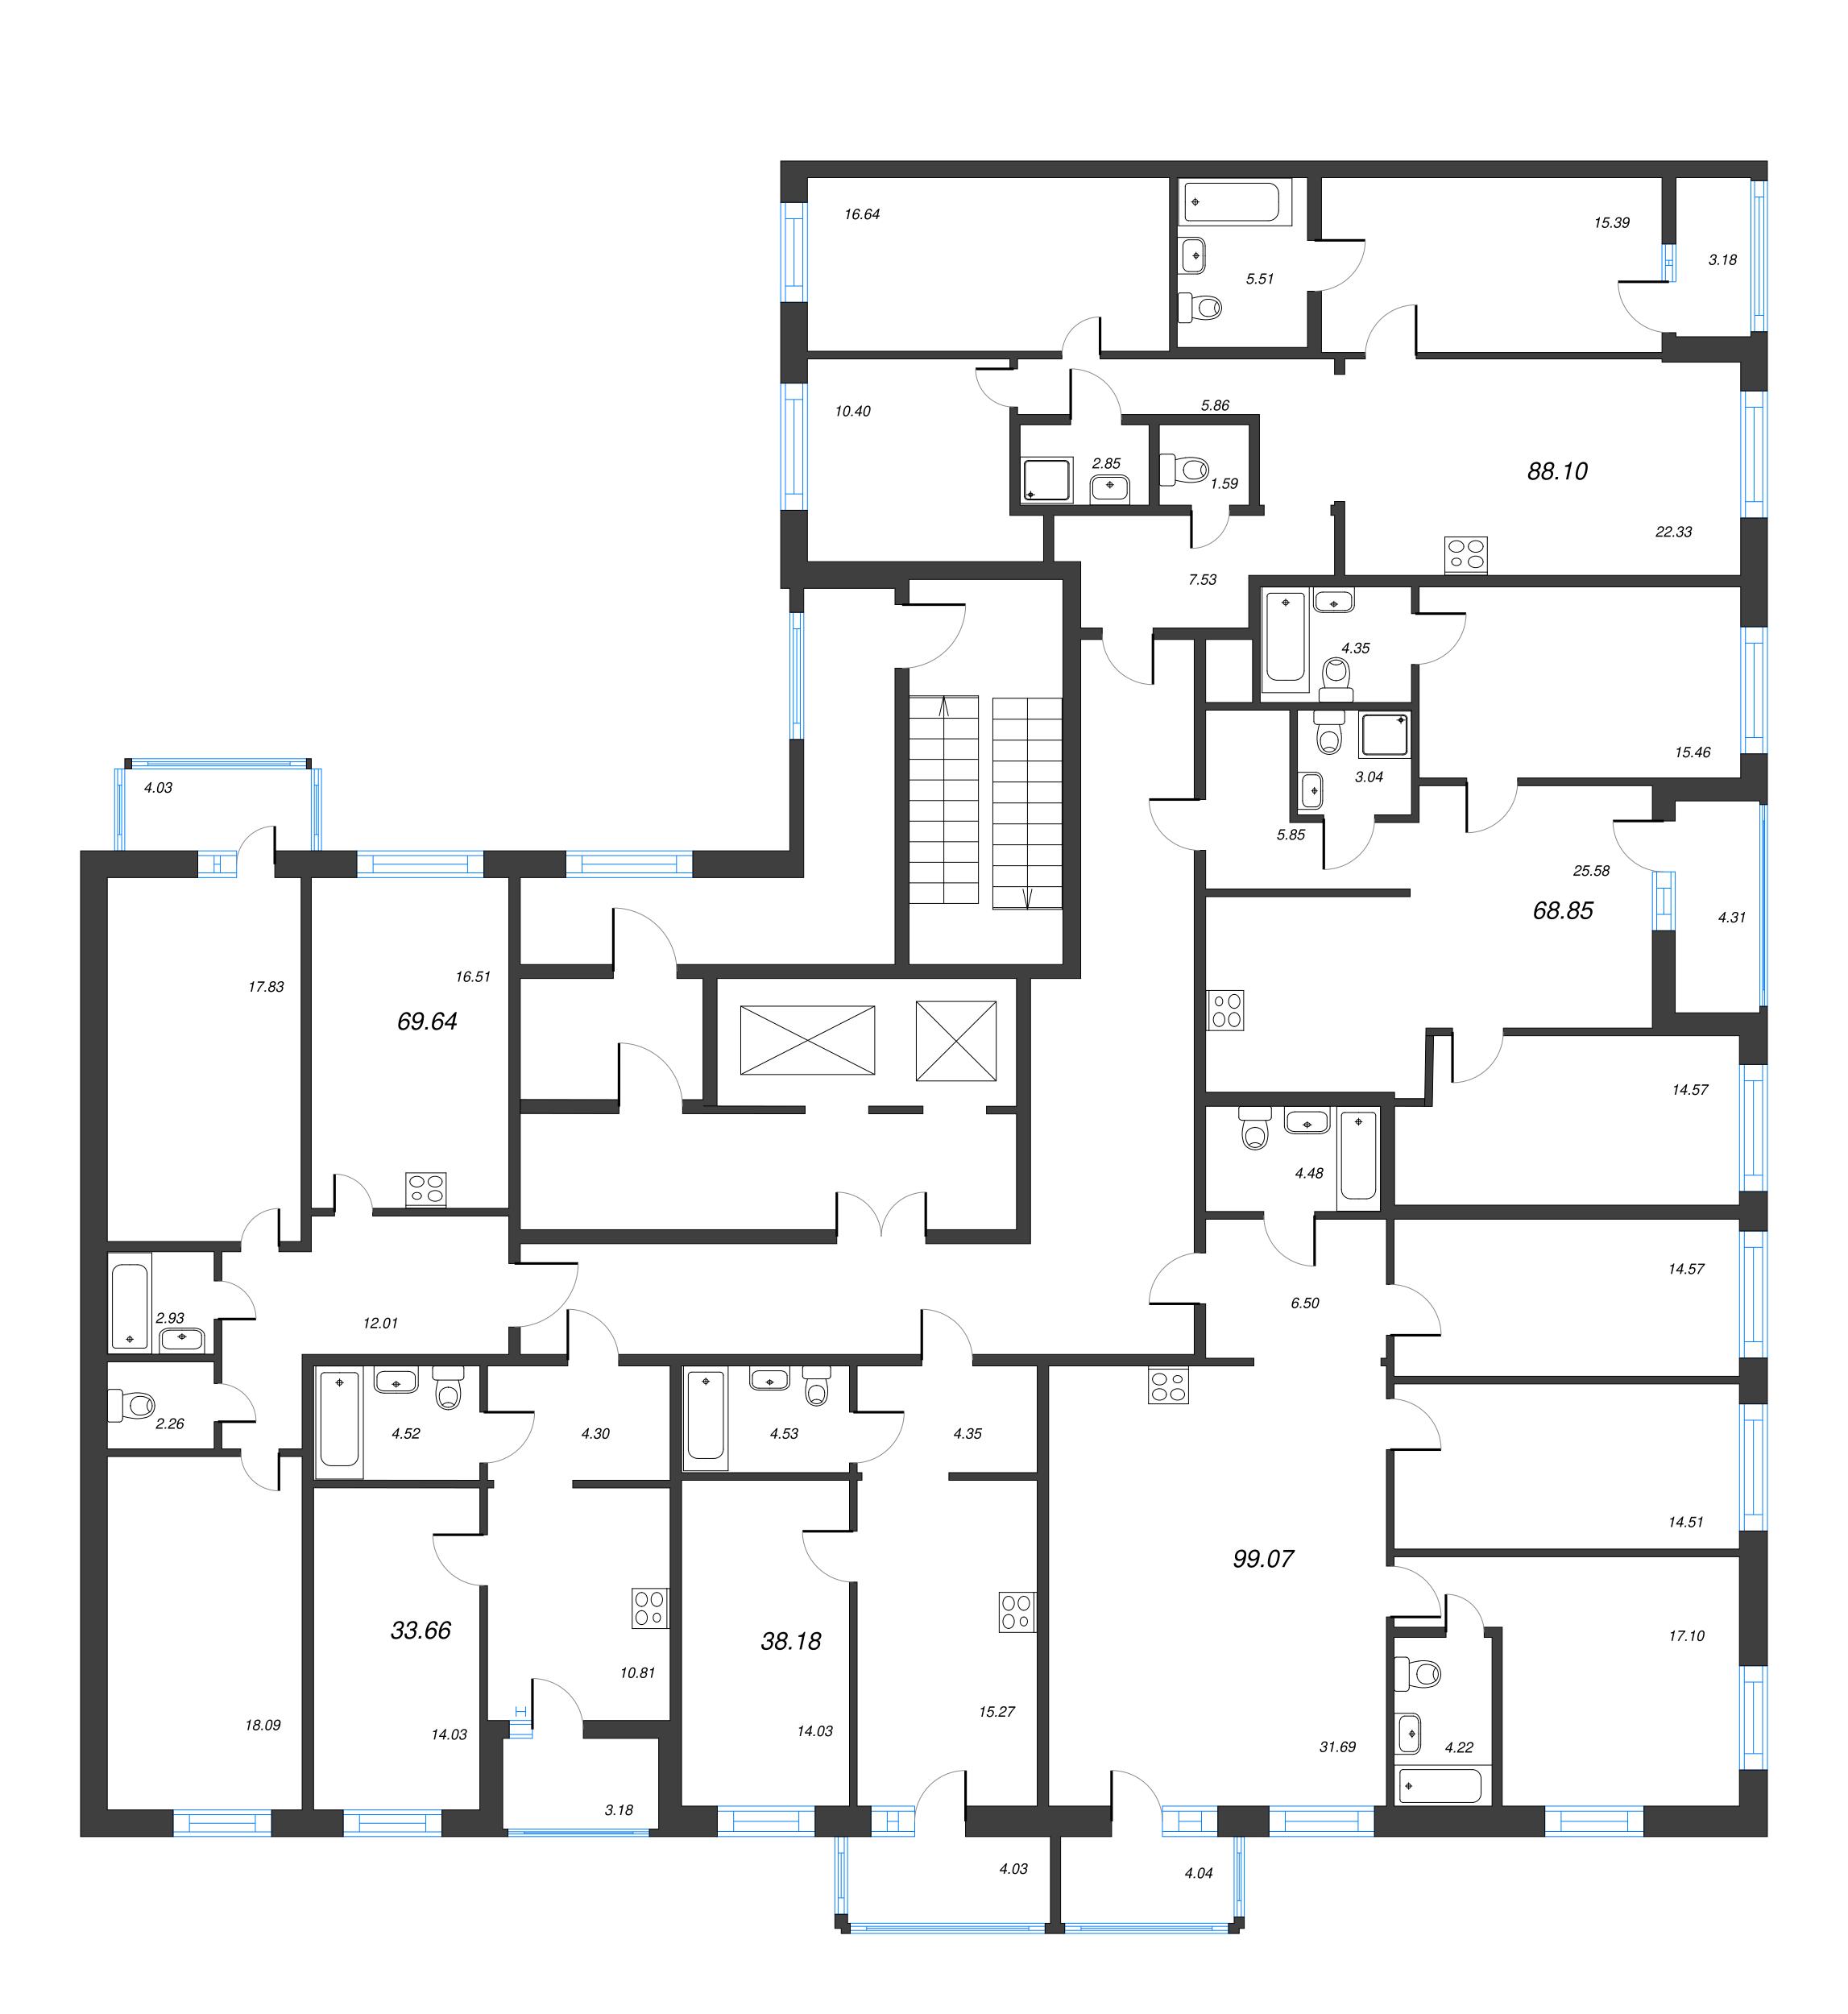 2-комнатная (Евро) квартира, 38.18 м² в ЖК "Чёрная речка" - планировка этажа